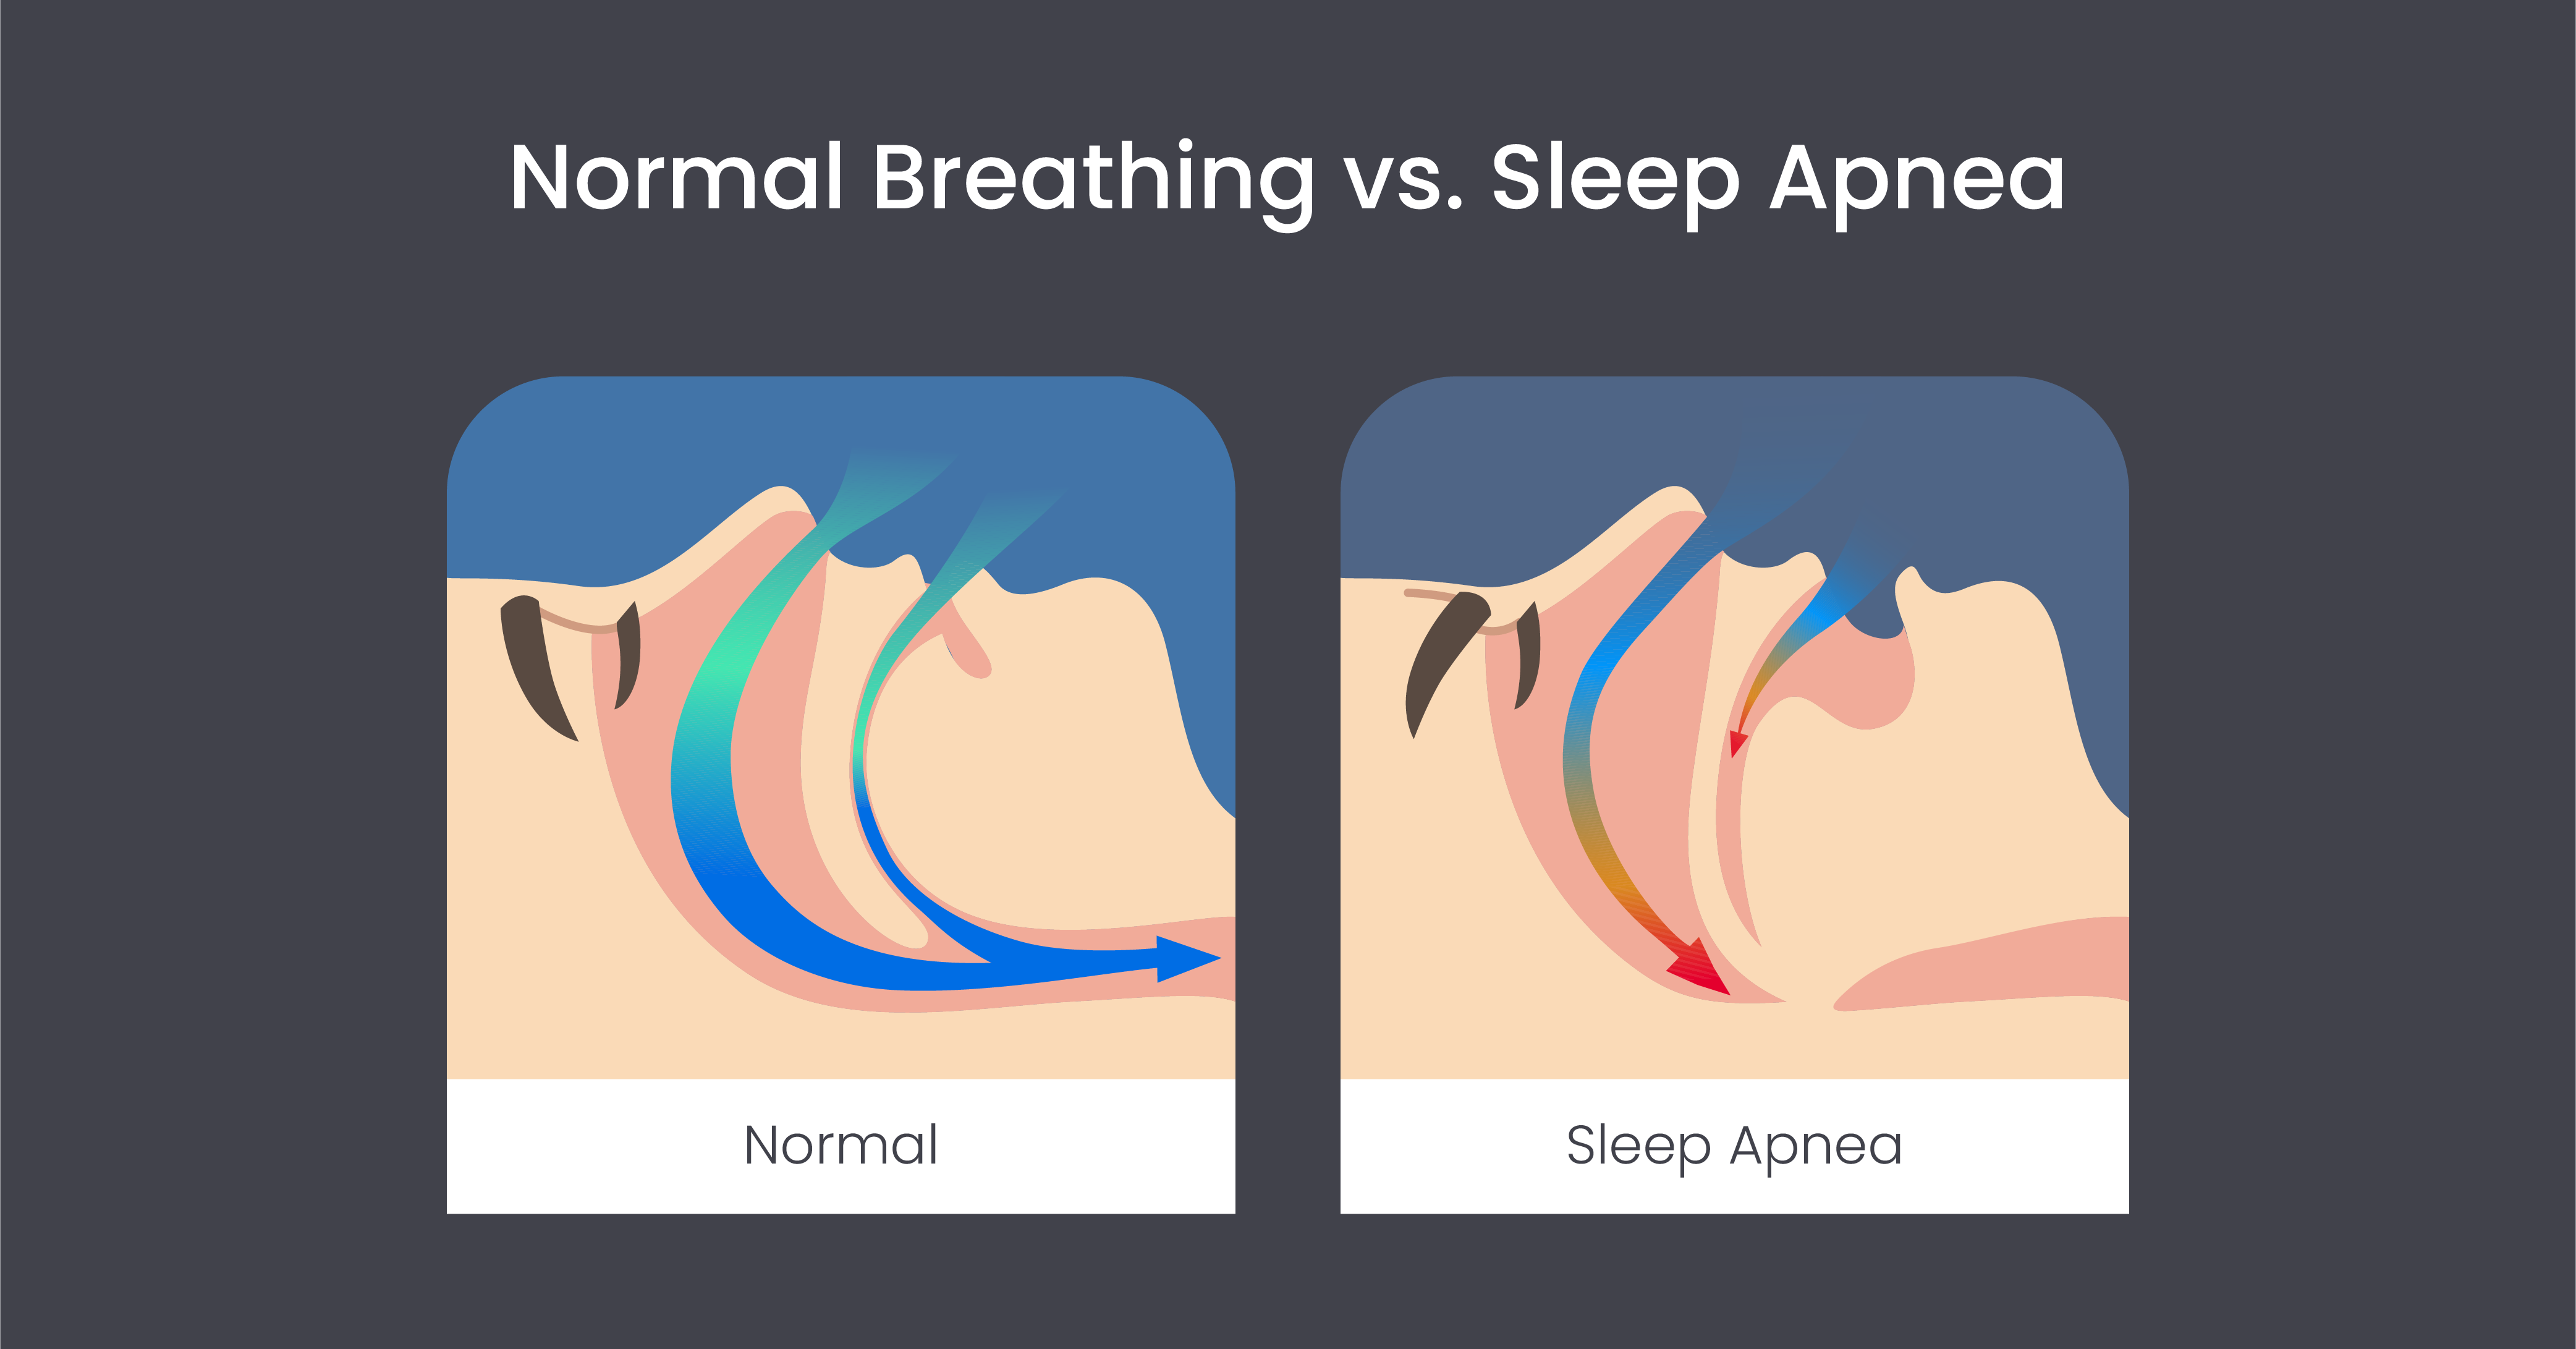 Normal breathing vs. sleep apnea